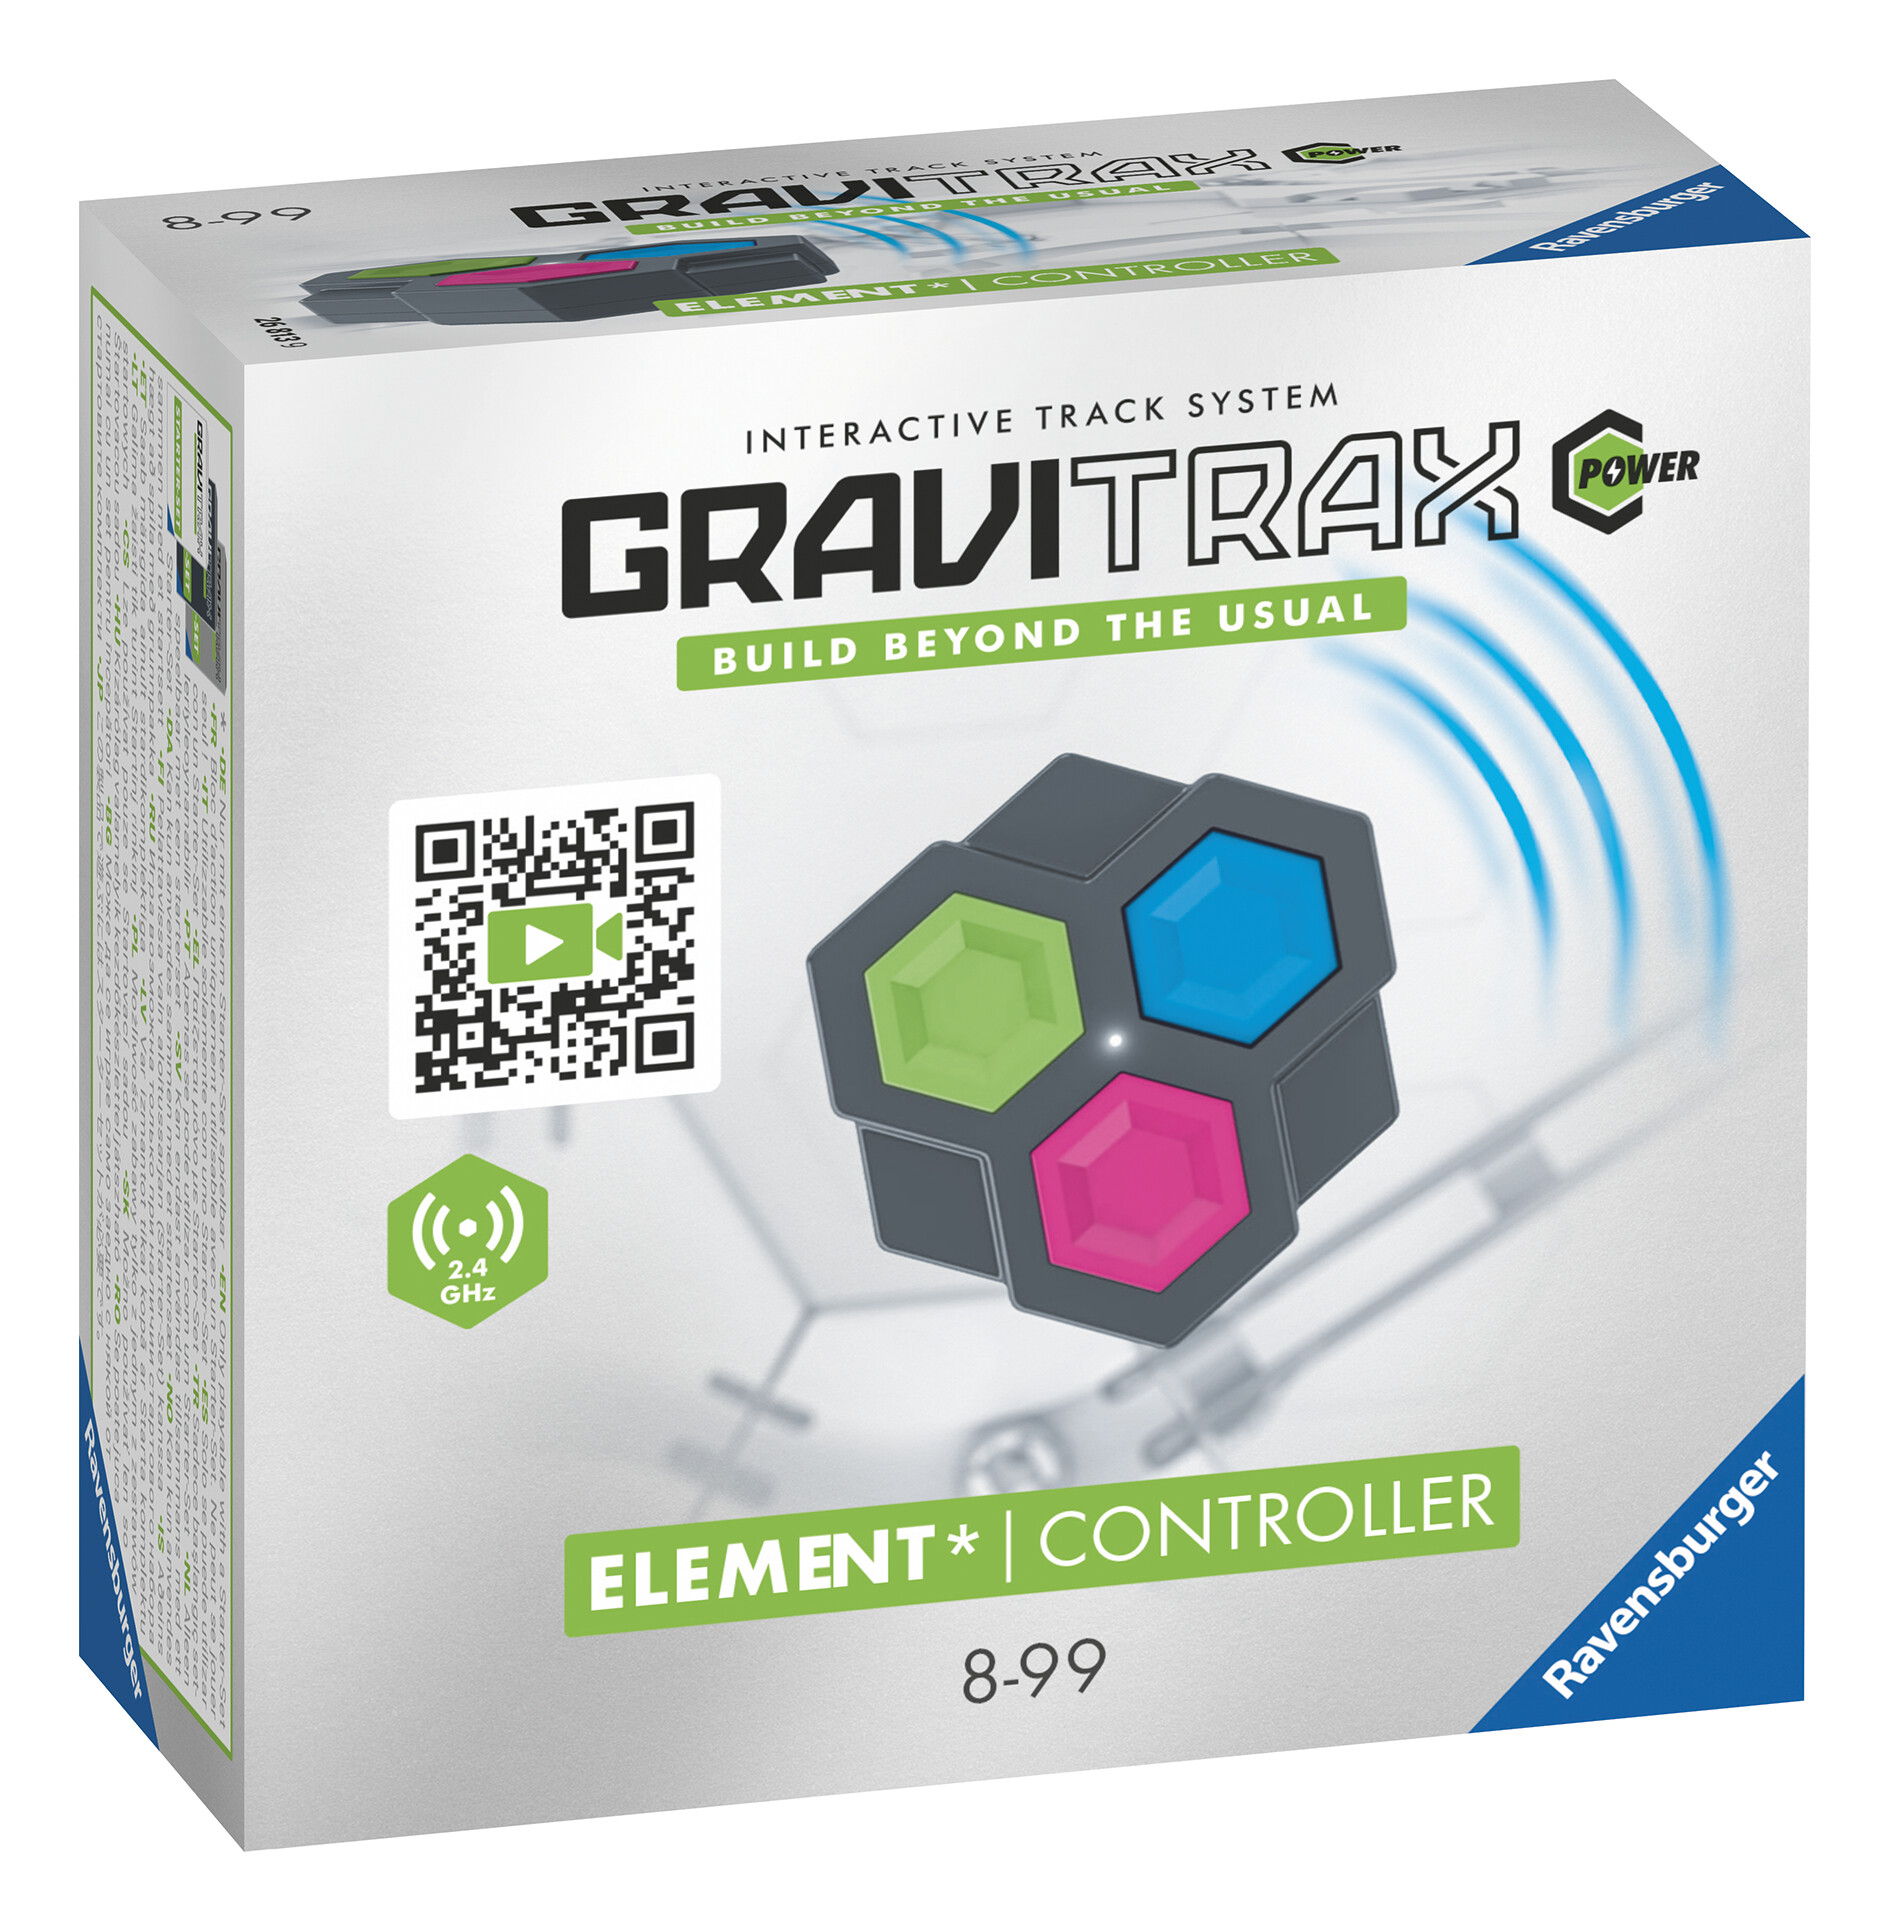 Ravensburger gravitrax power element controller, gioco innovativo ed educativo stem, 8+ anni, estensione - GRAVITRAX